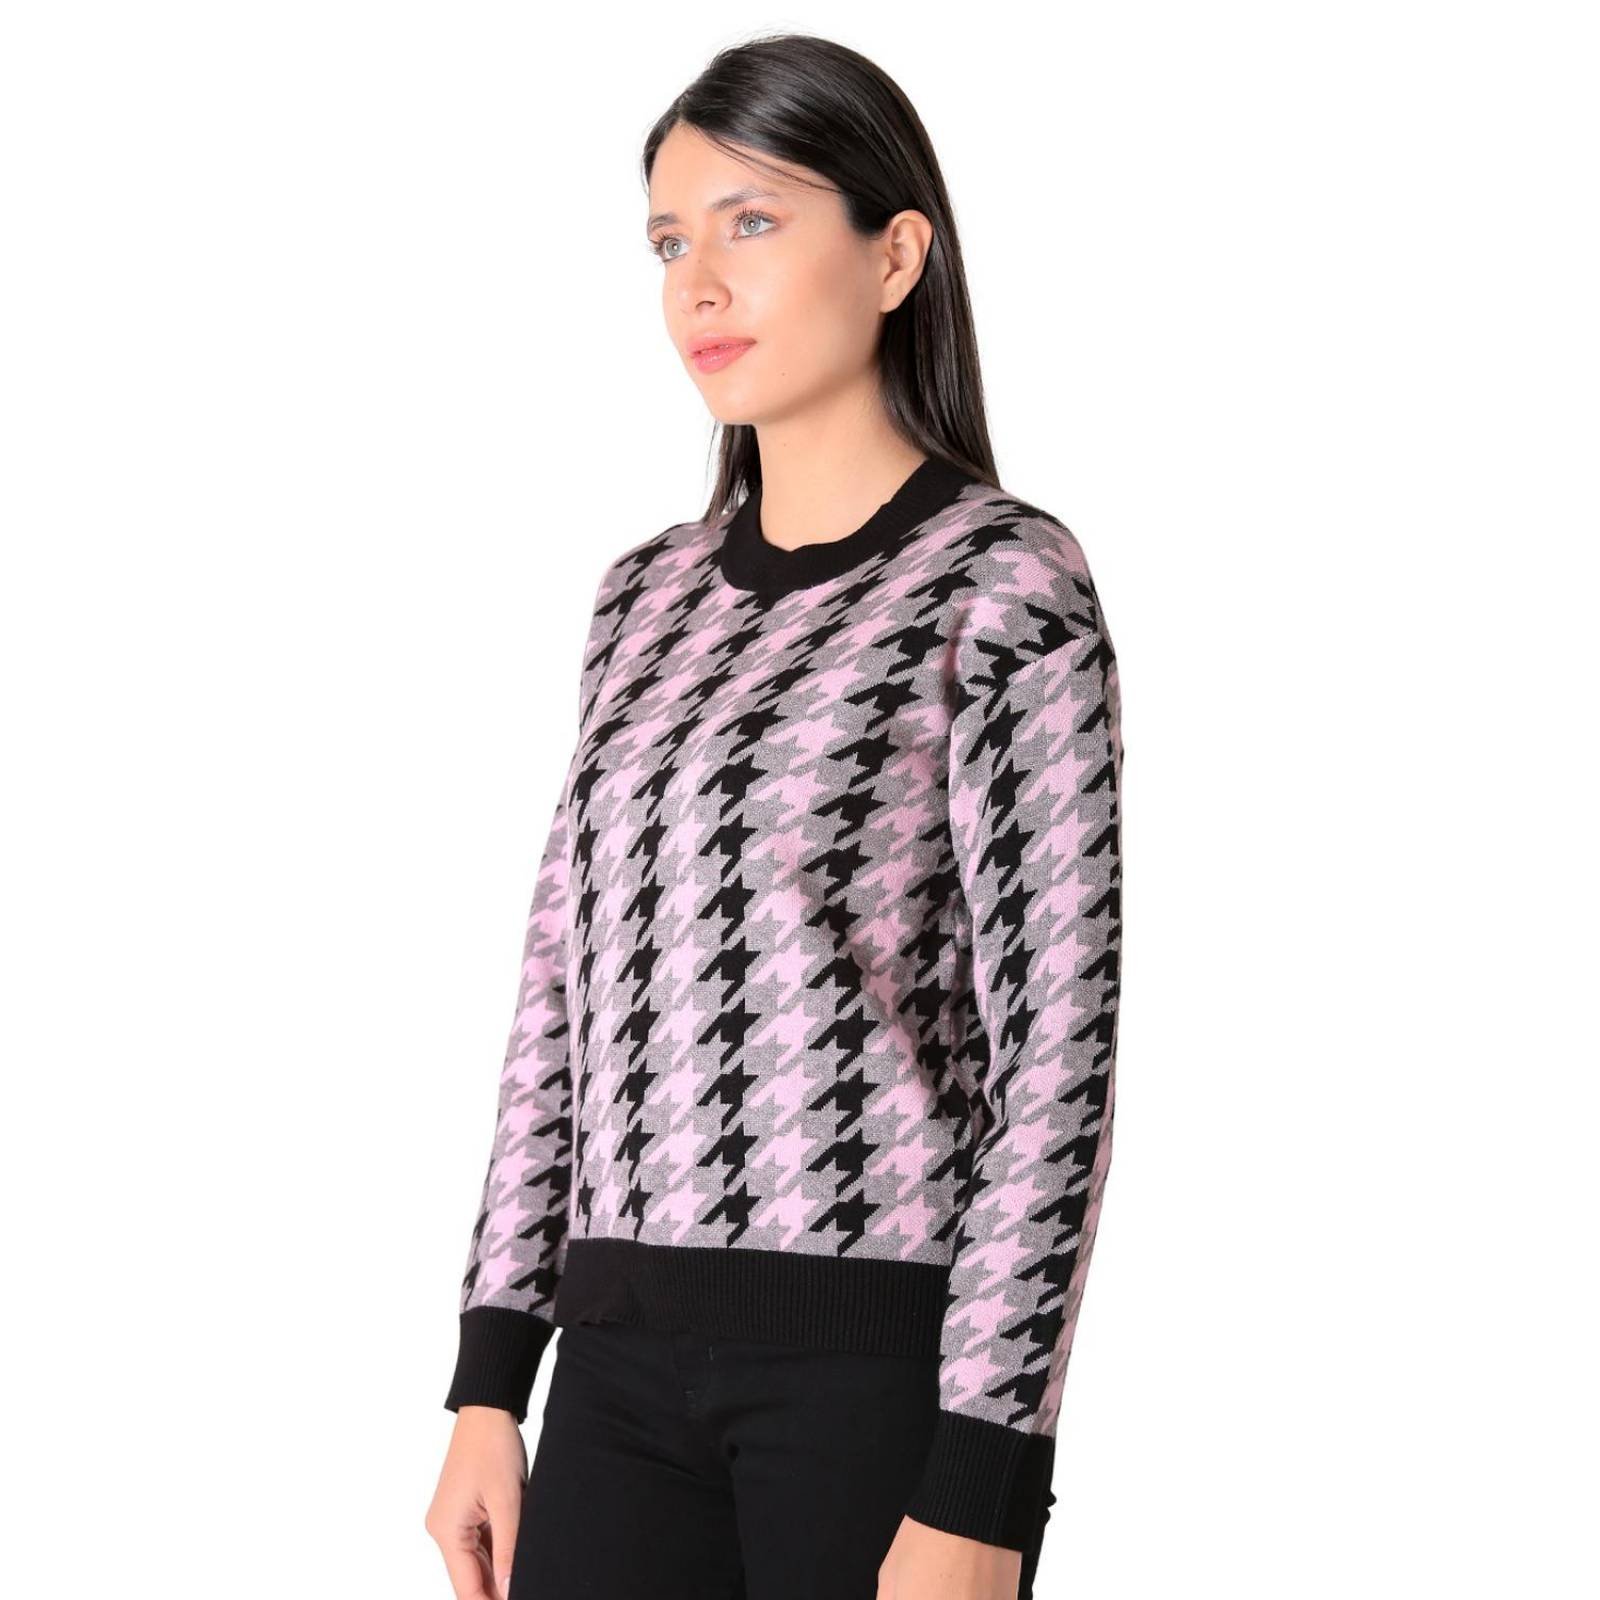 Sweater Mujer Negro Uk 56704730